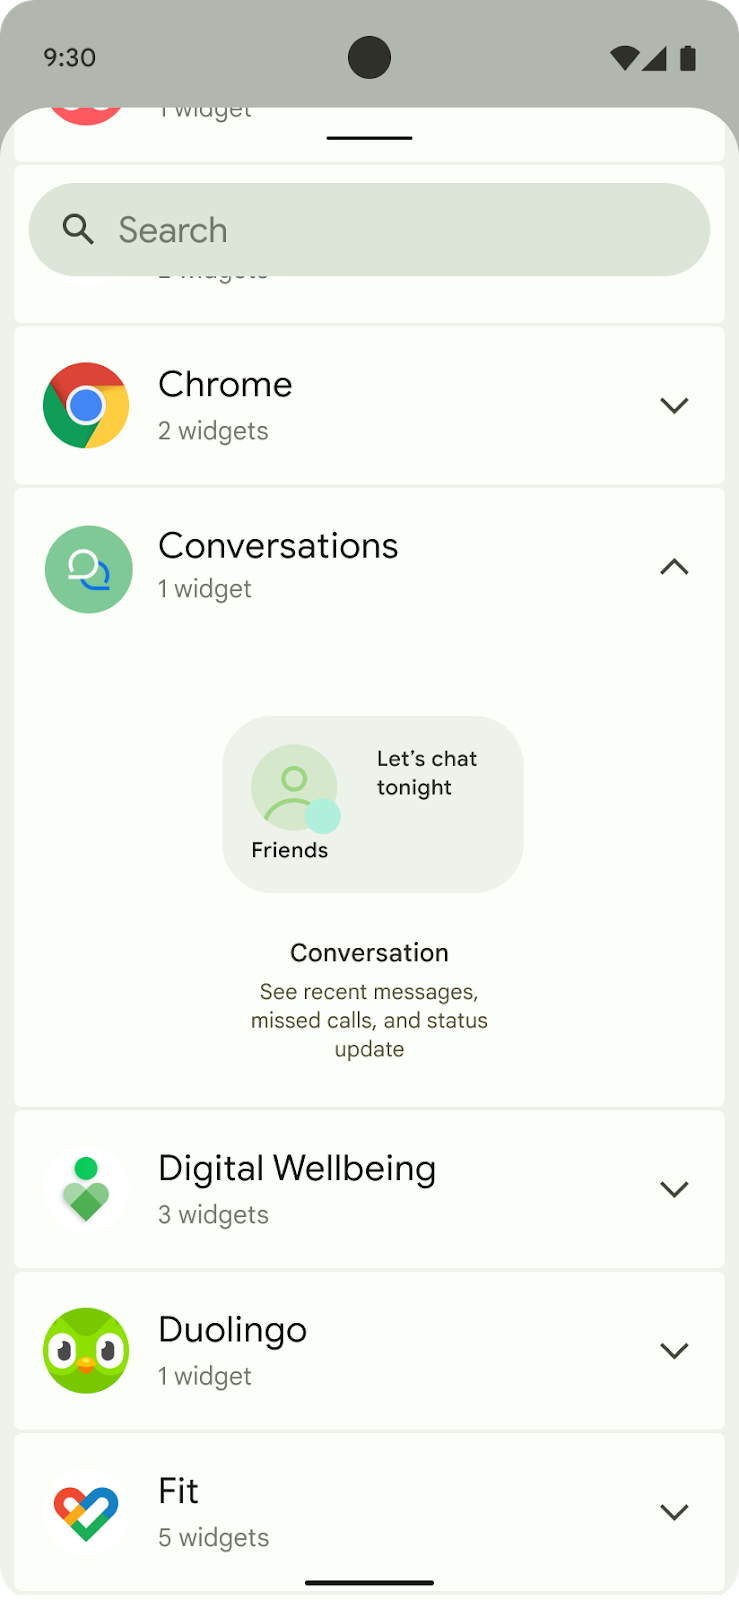 Widget picker UI to add a new conversation widget